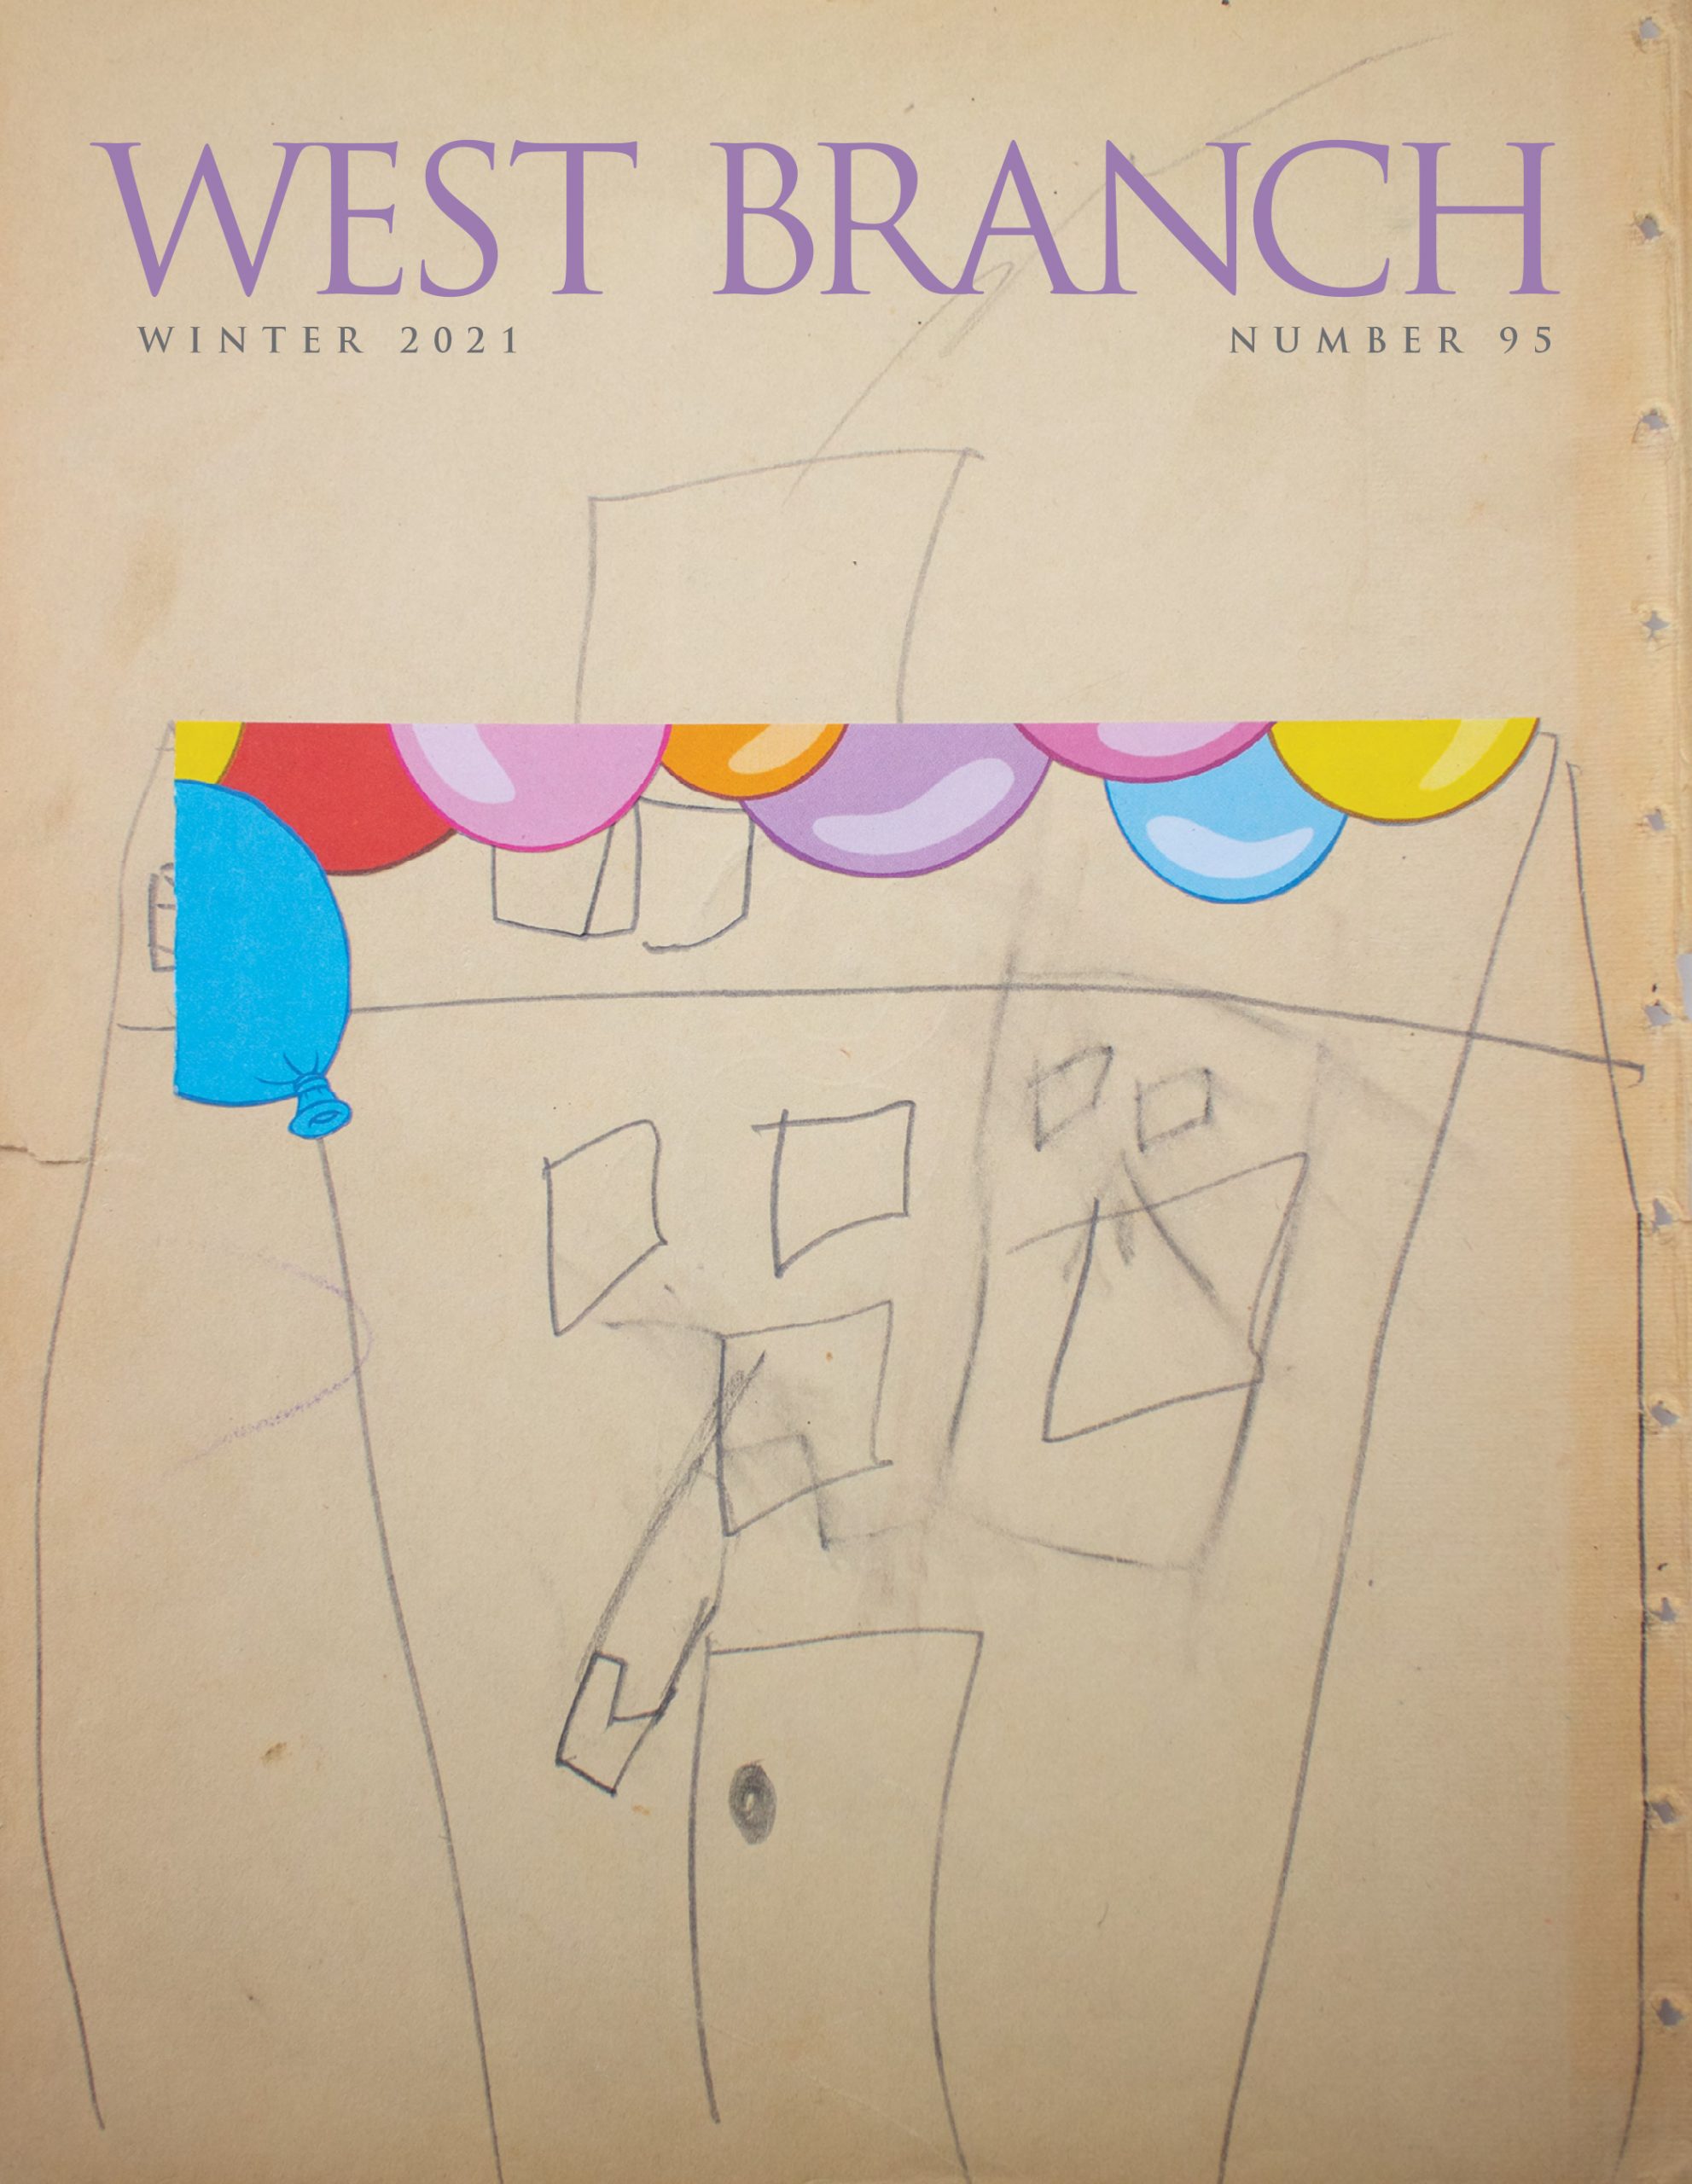 West Branch 95, Winter 2021